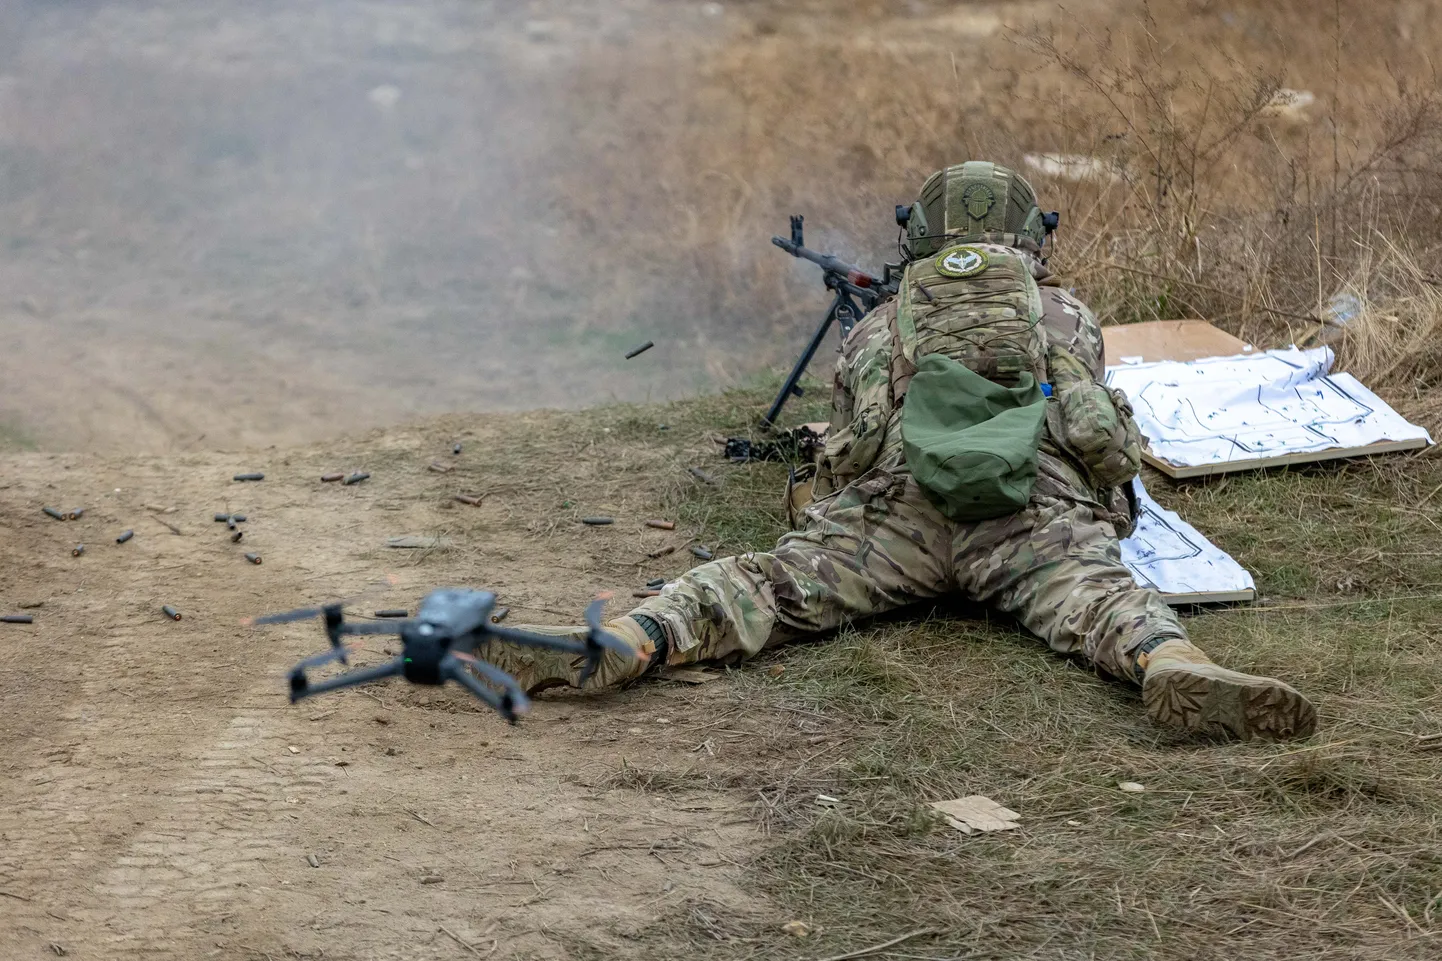 Надежда украинской армии заключается в том, что их солдаты лучше подготовлены и мотивированы, чем российские. На фотографии изображен солдат 80-й десантной бригады Украины на тренировке на полигоне в тылу фронта в Донецкой области.